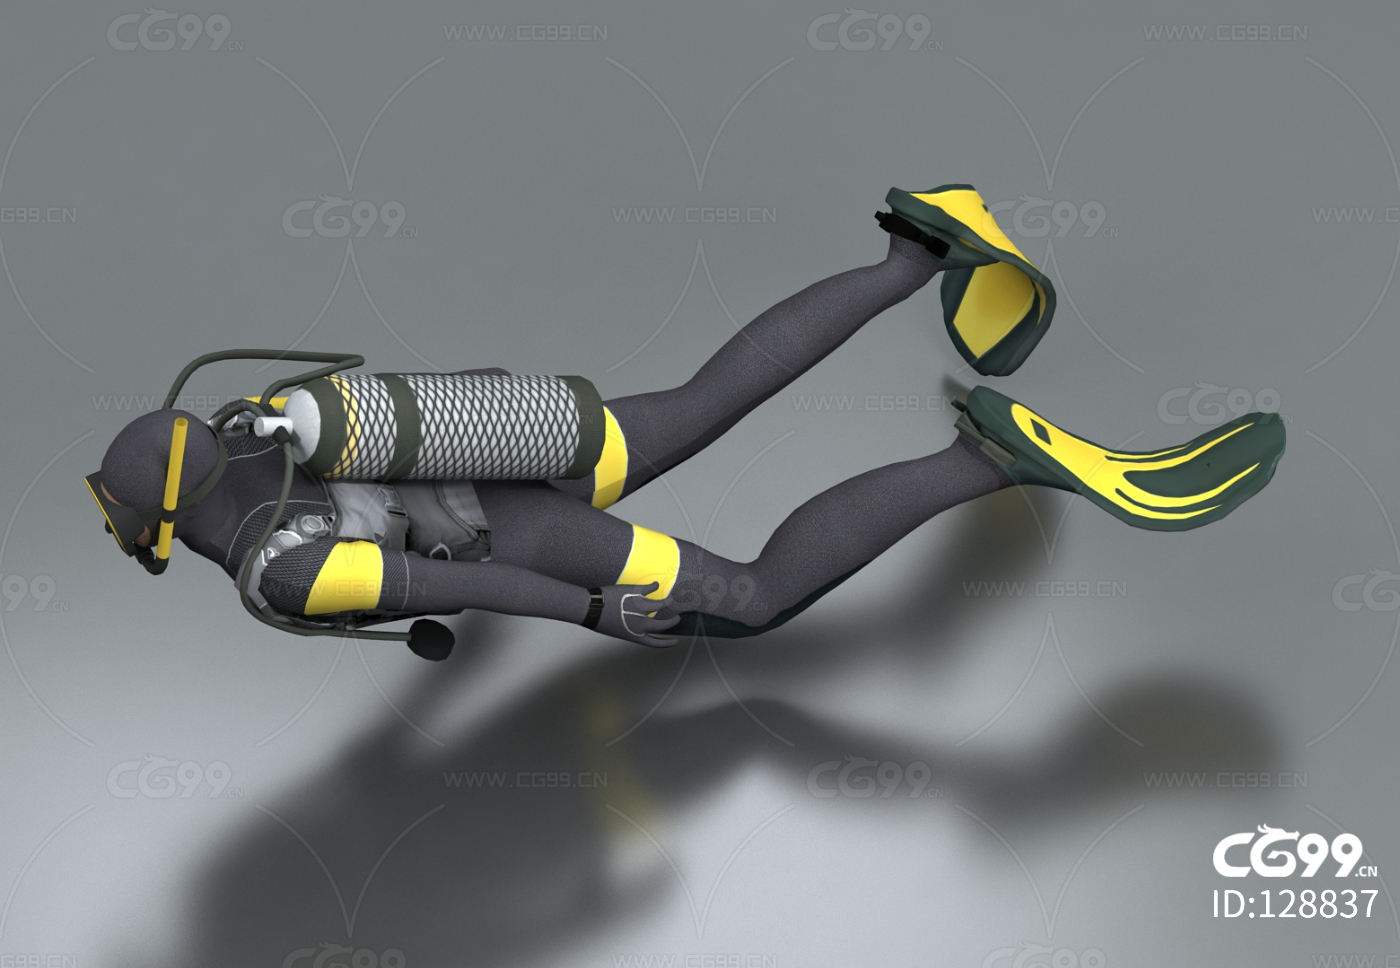 MZ300潜水头盔 市政潜水排污工程装备 深潜打捞面罩 重潜工程头盔-阿里巴巴